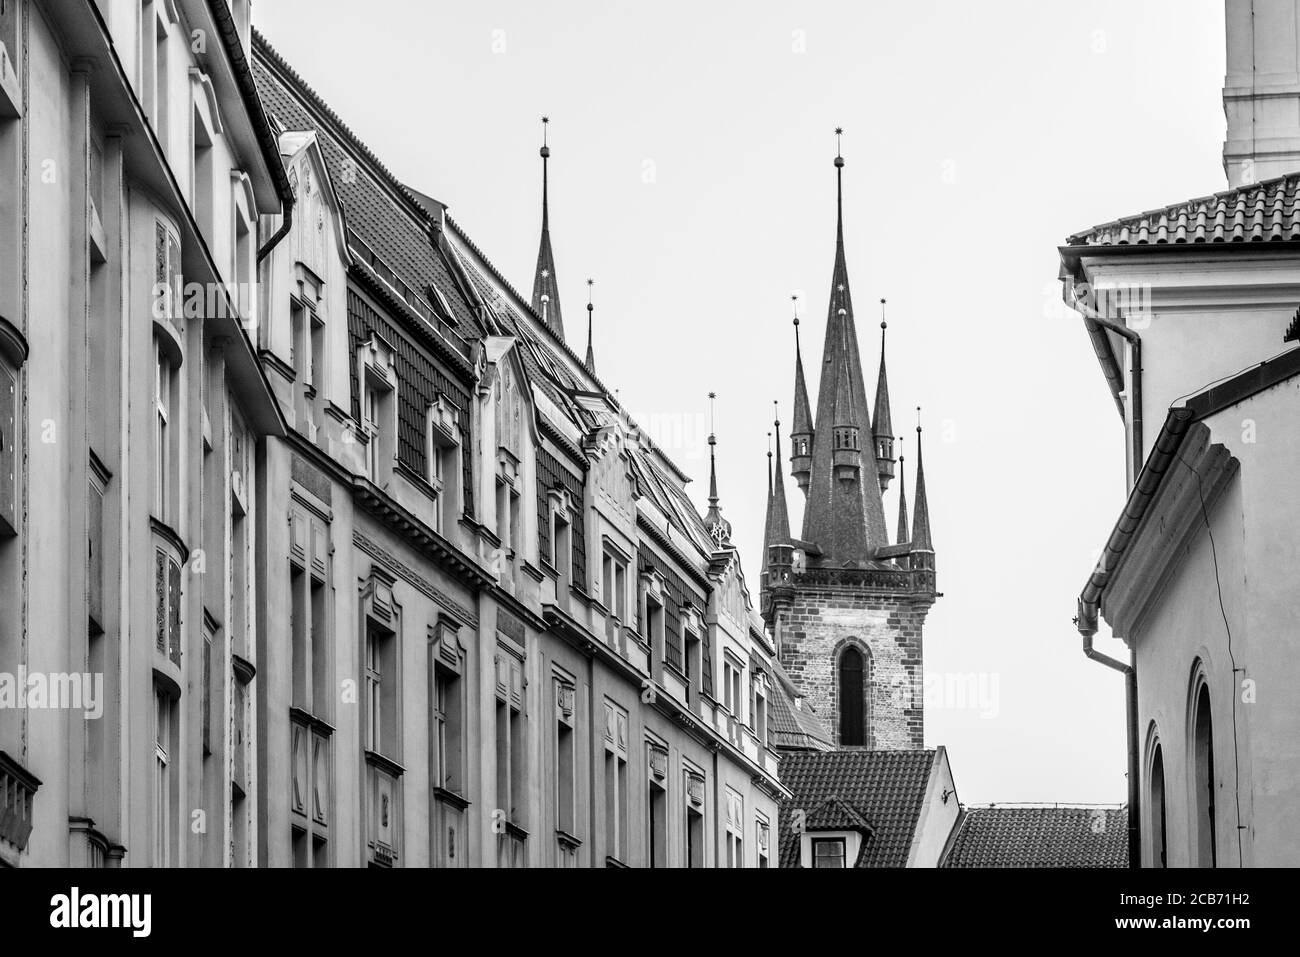 Zwei Türme der Kirche unserer Lieben Frau vor Tyn teilweise hinter alten Stadtgebäuden versteckt, Prag, Tschechische Republik. Schwarzweiß-Bild. Stockfoto